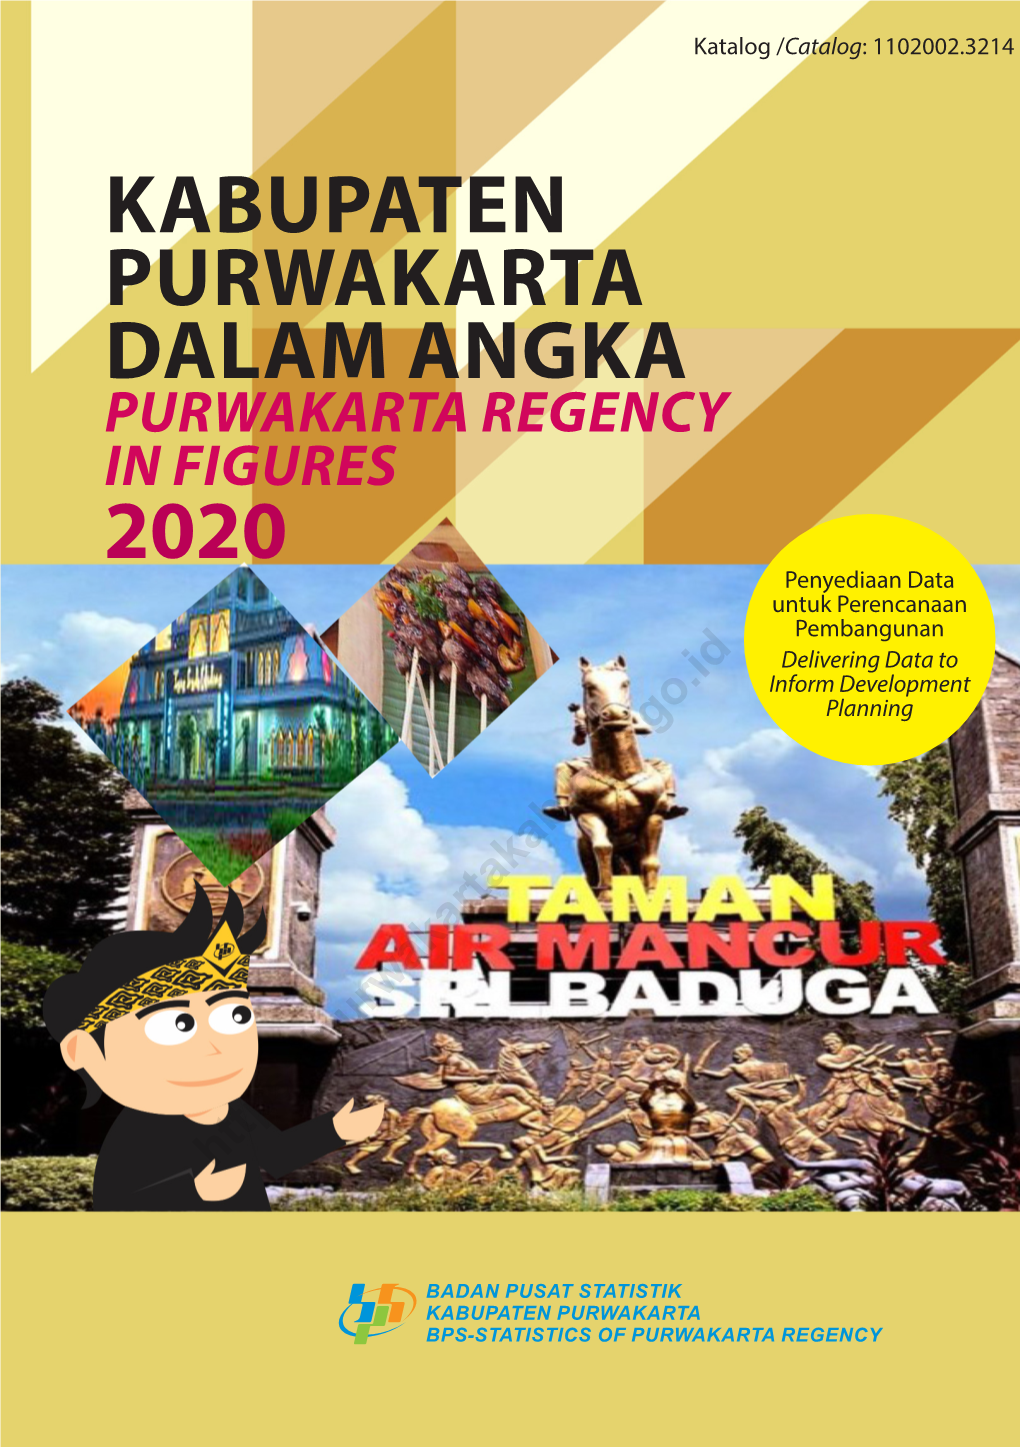 Kabupaten Purwakarta Dalam Angka 2020 Purwakarta Regency in Figures 2020